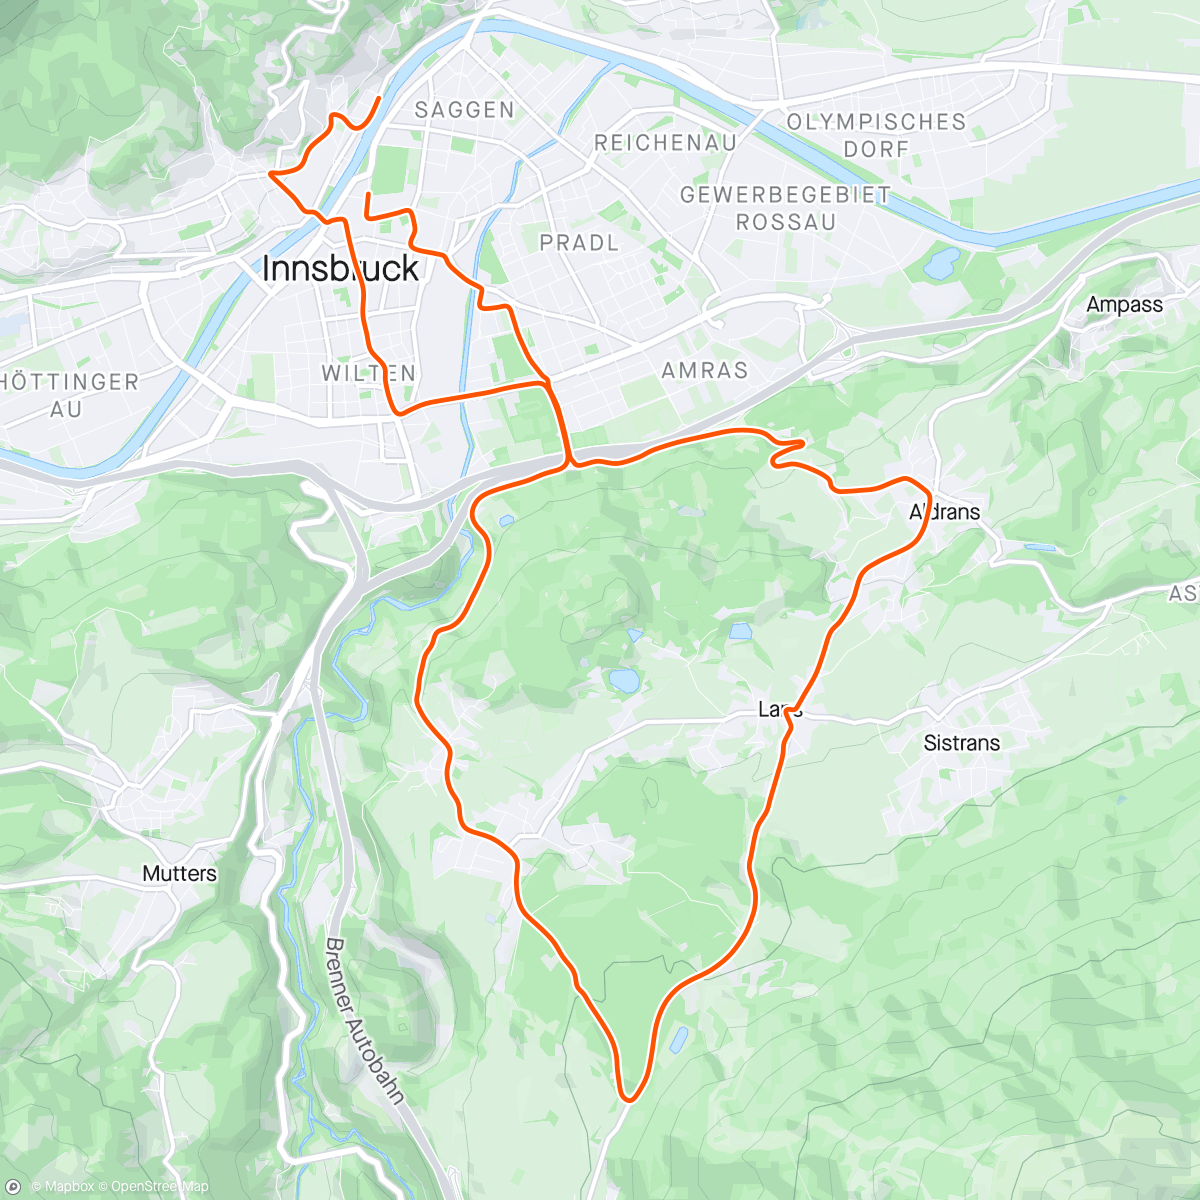 アクティビティ「Zwift - 2018 Worlds Short Lap in Innsbruck」の地図